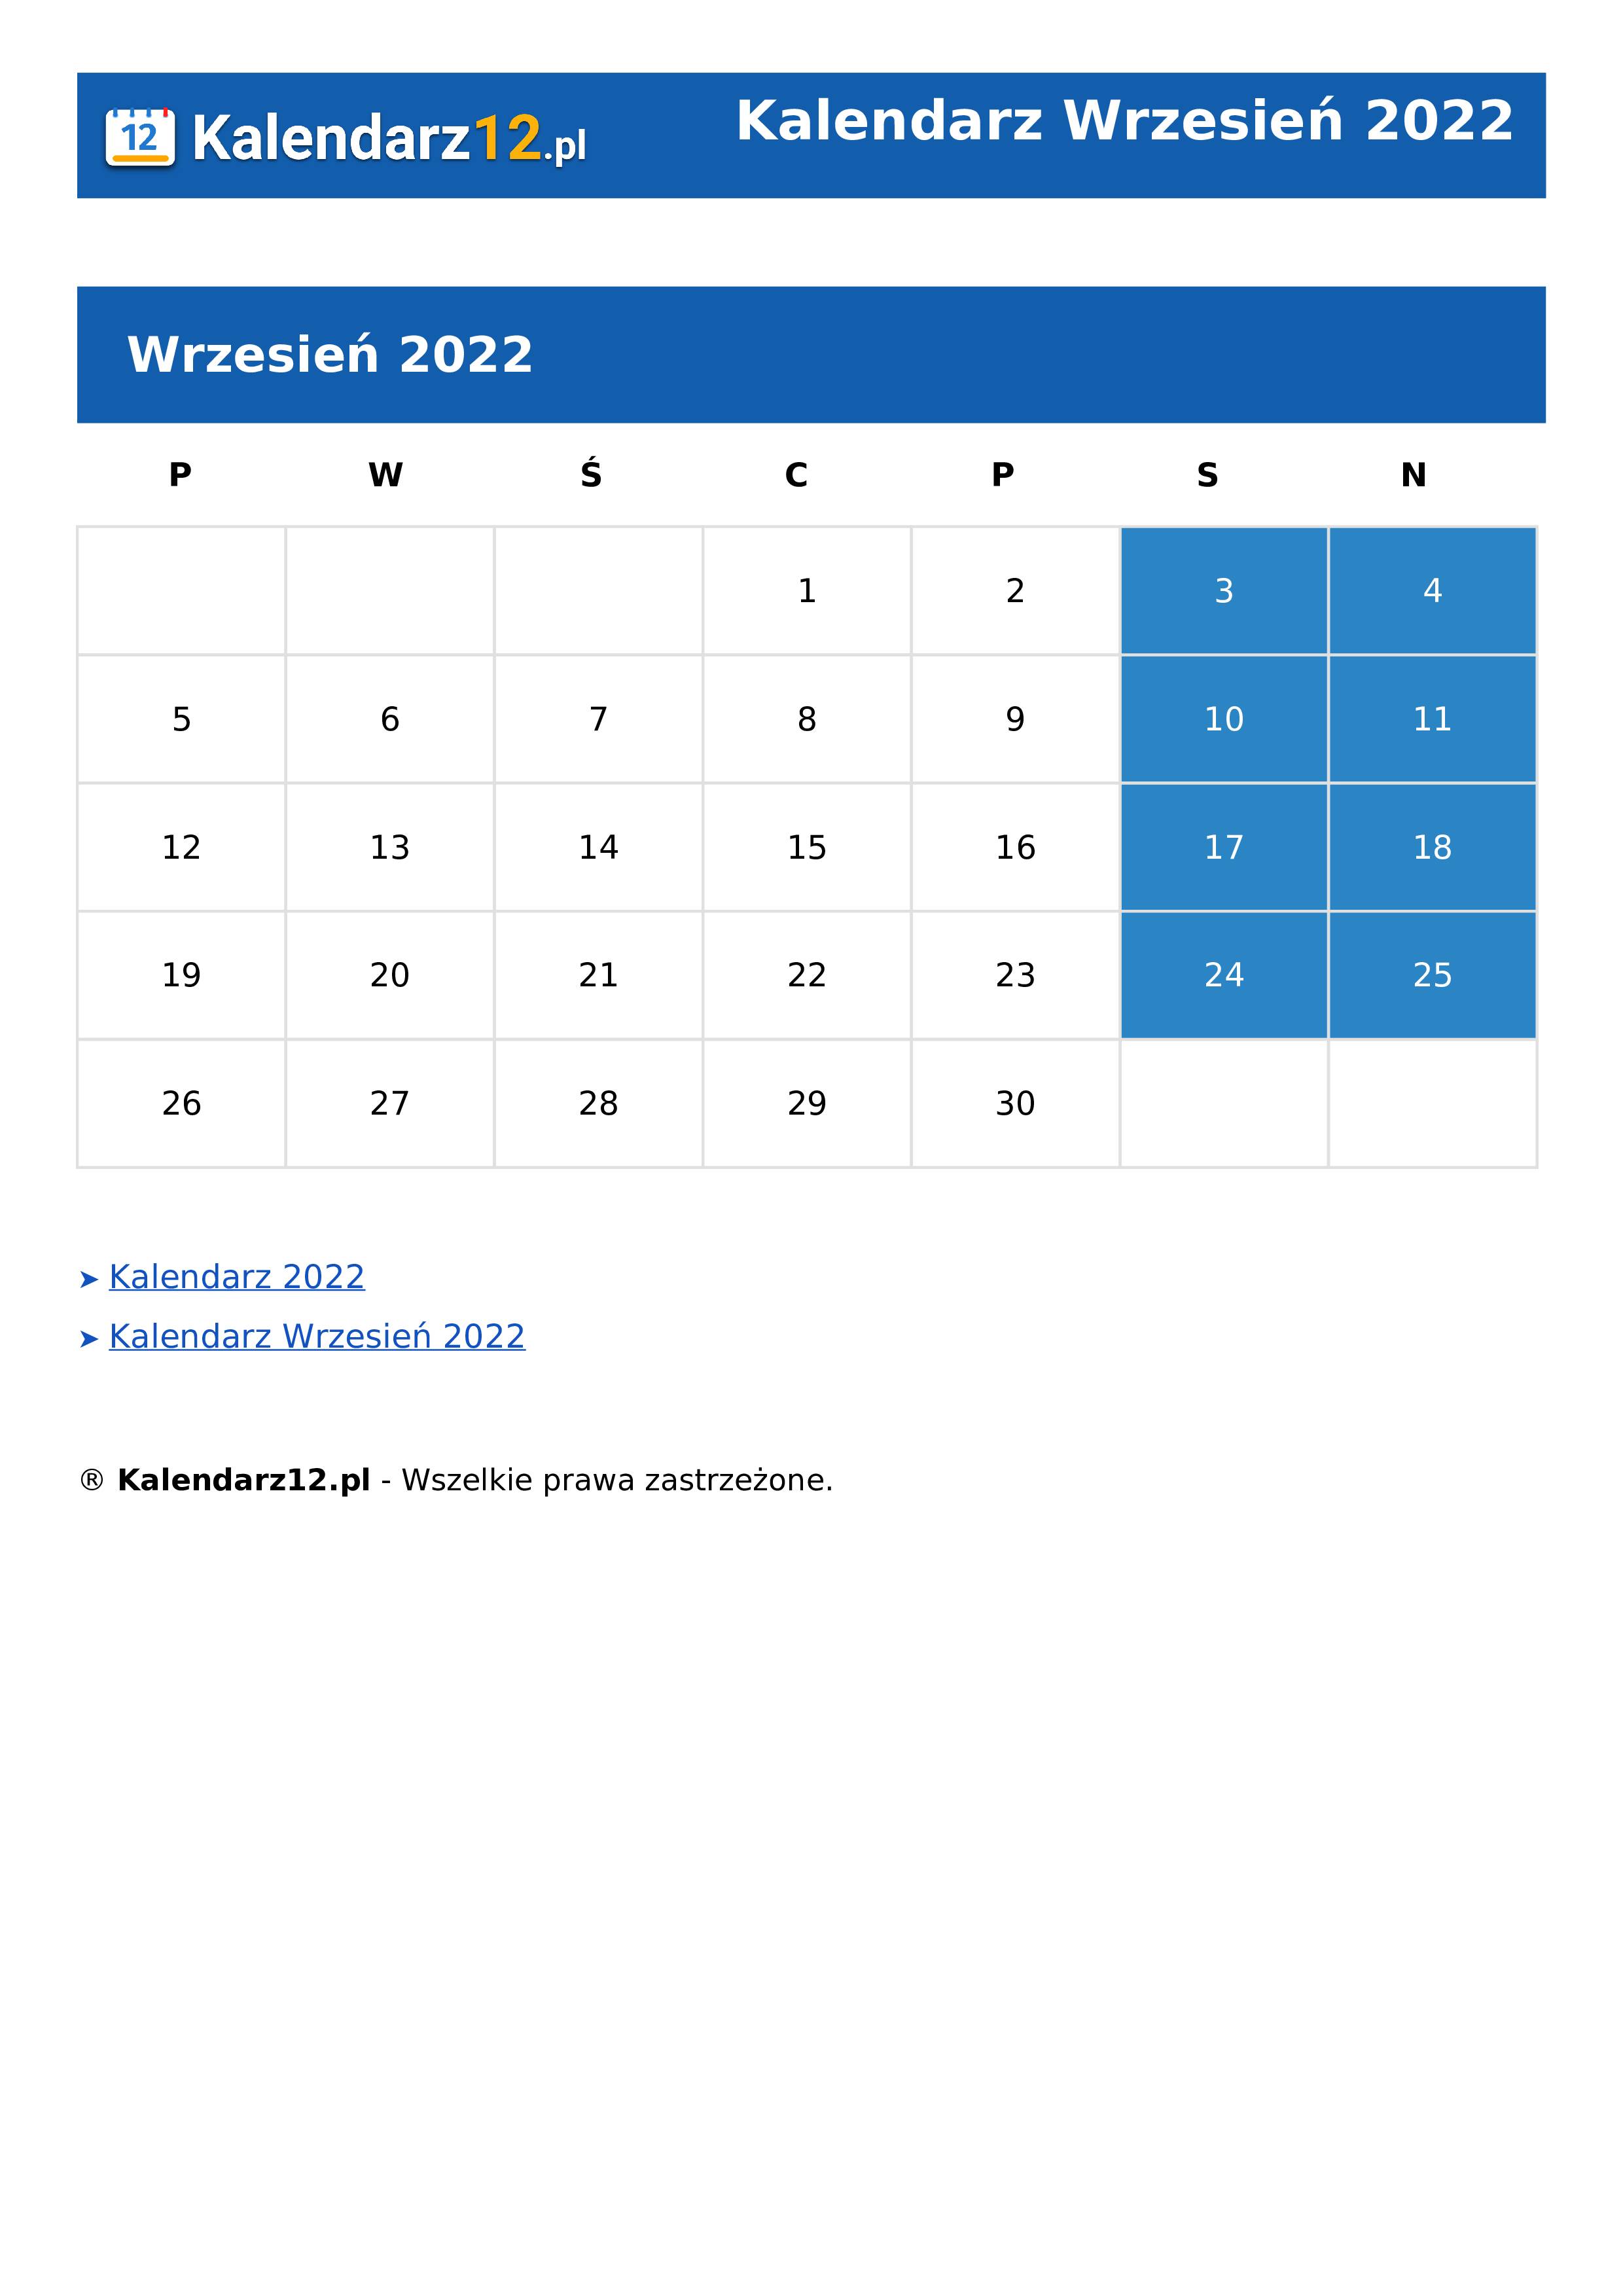 Calendar Wrzesień 2022